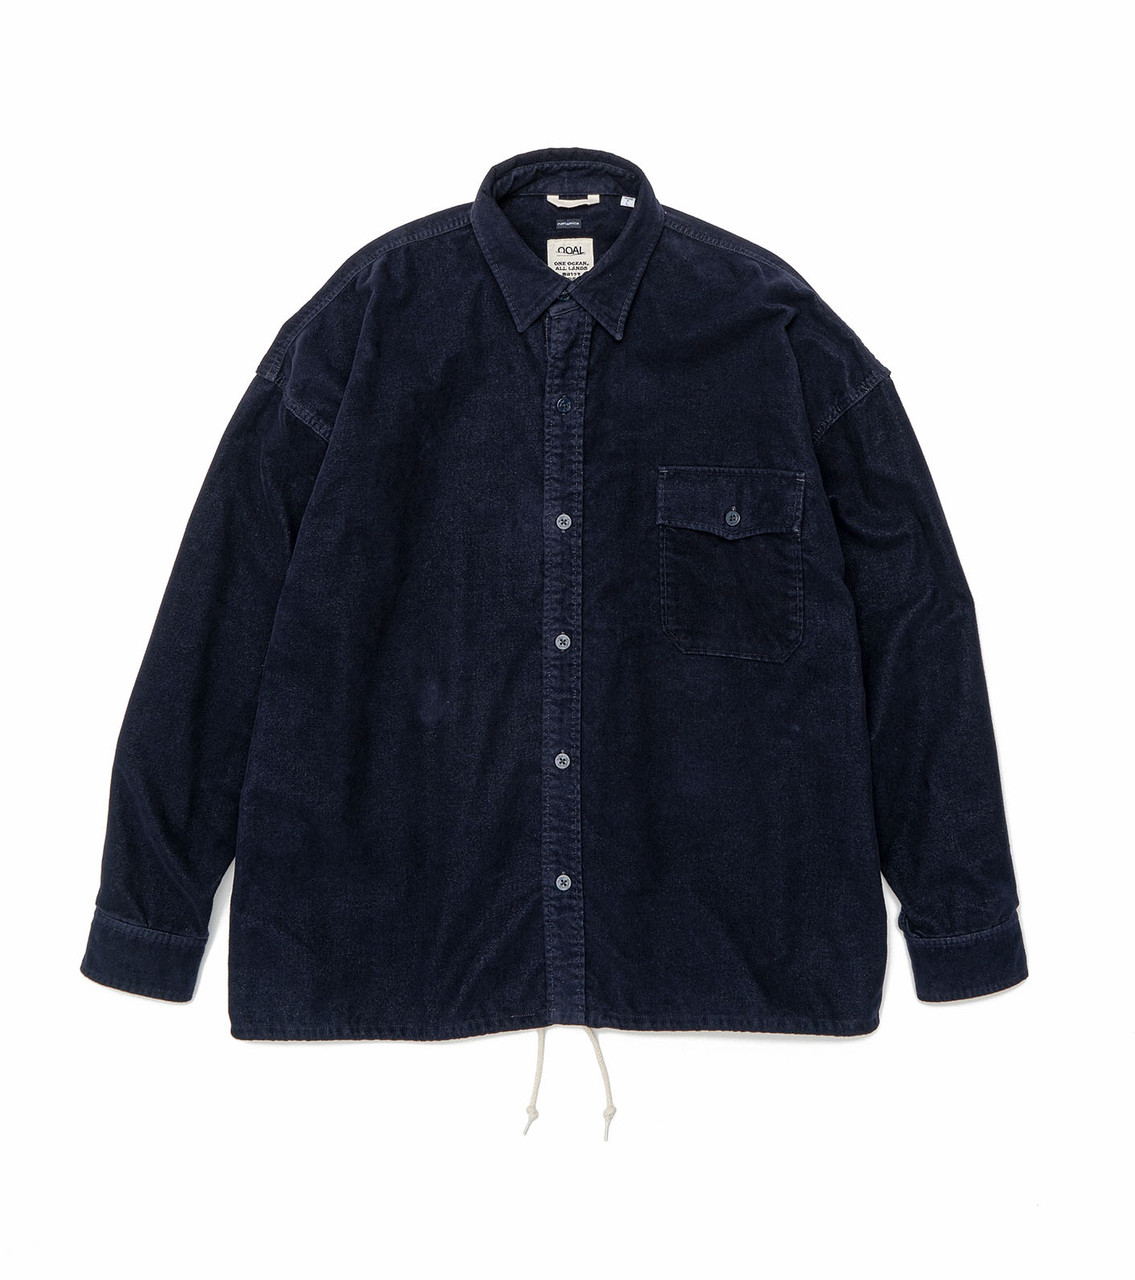 Flannel CPO Shirt Jacket SUAF298 Black色COLO